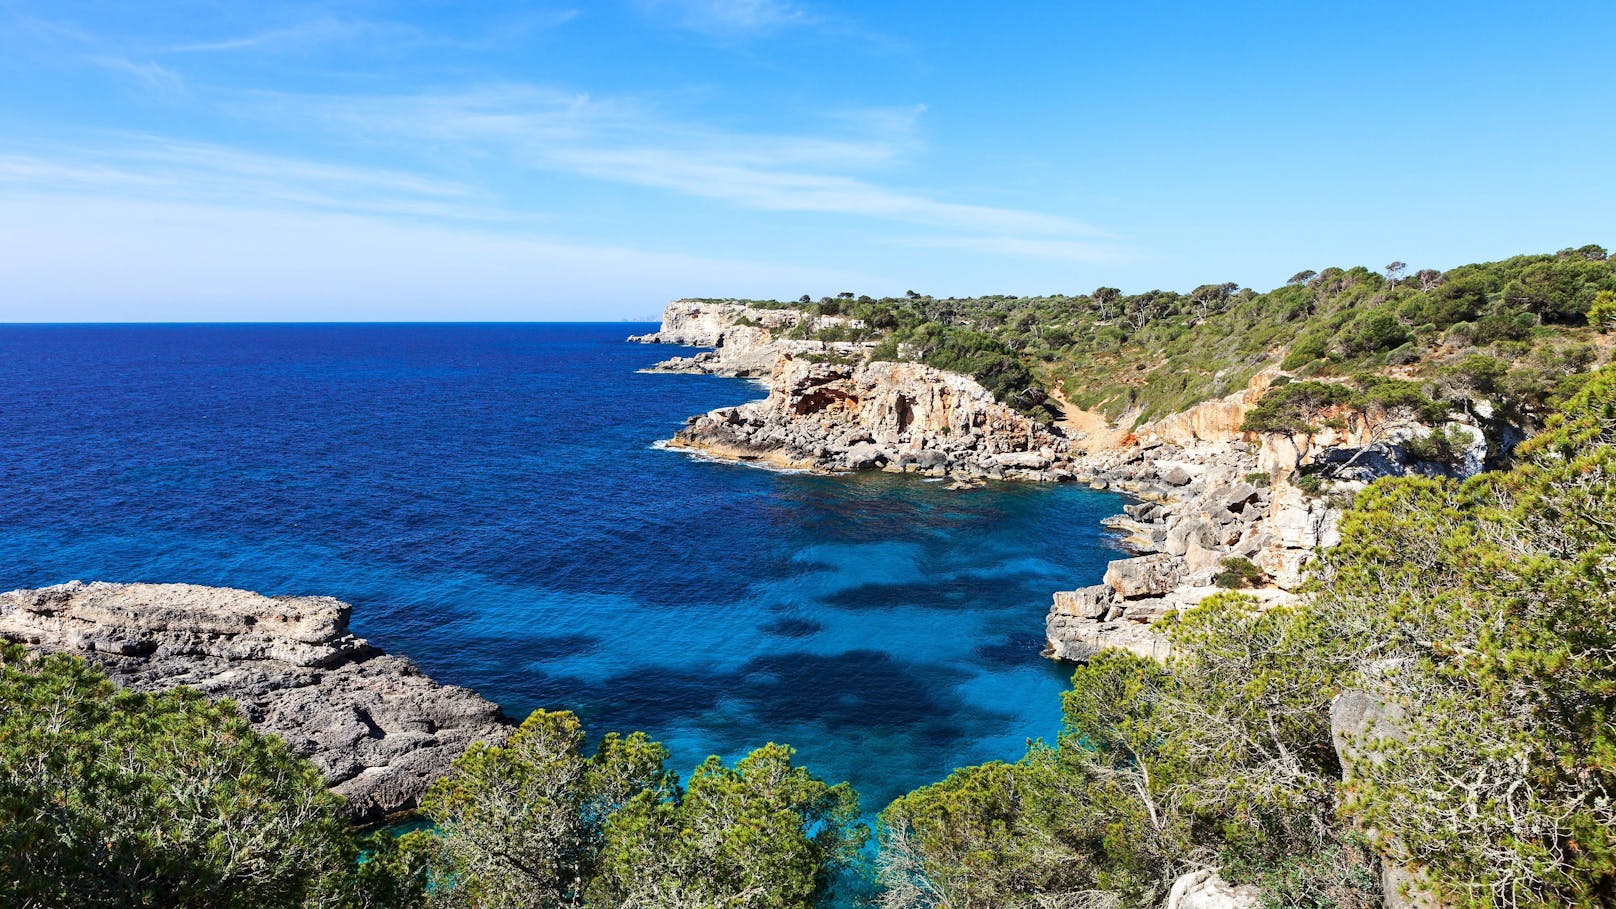 "Invasion" – Traum-Bucht auf Mallorca völlig überrannt